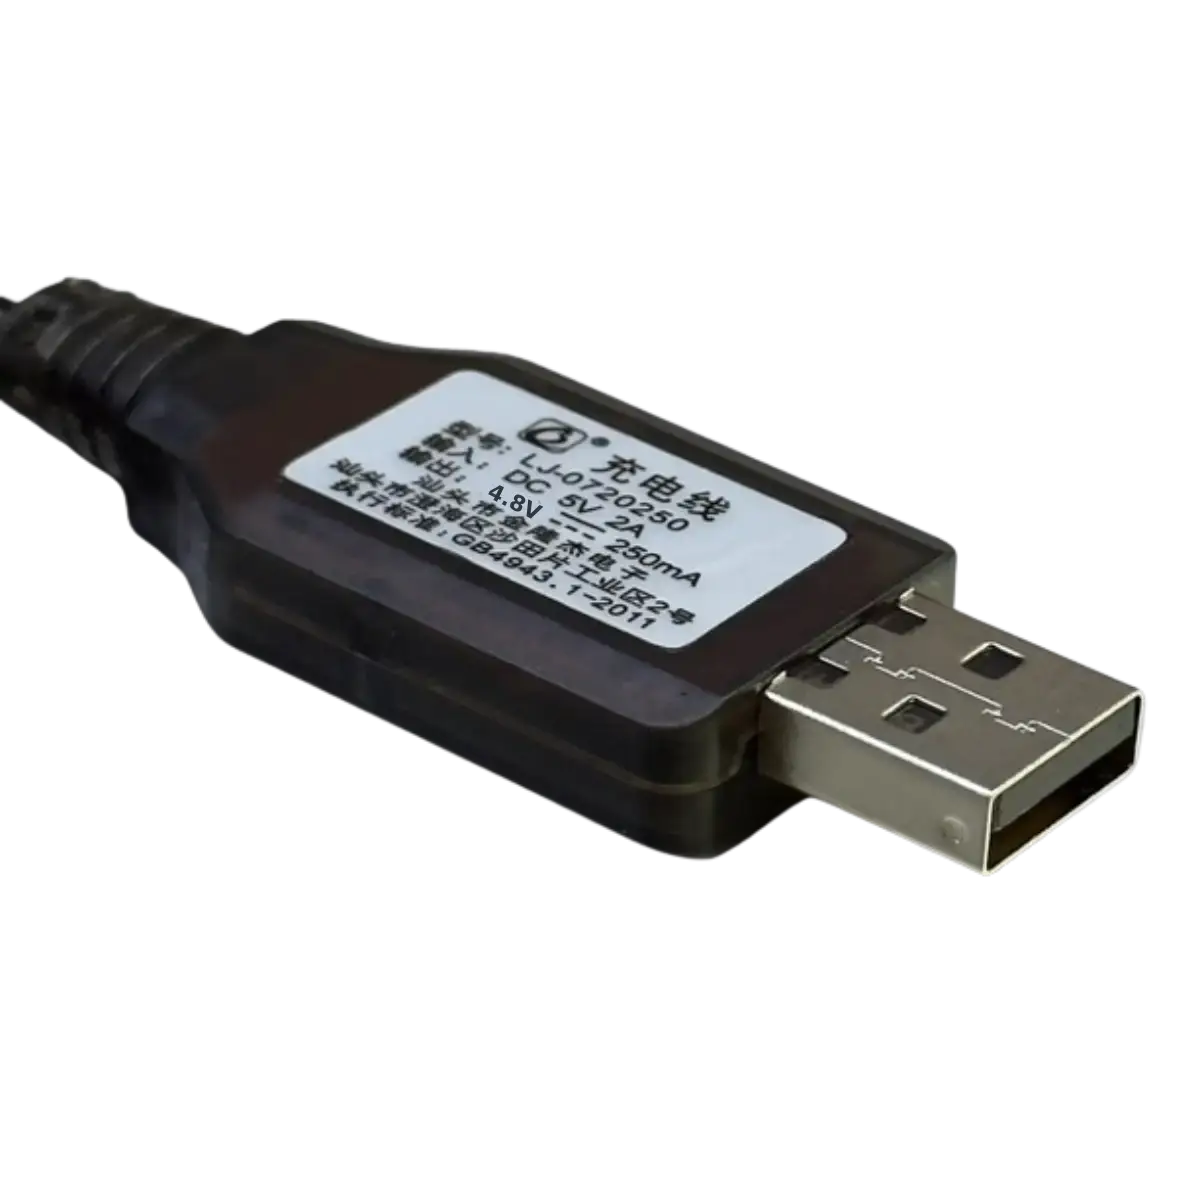 Chargeur USB 4.8V 250mA pour jouets radiocommandés, voitures etc..